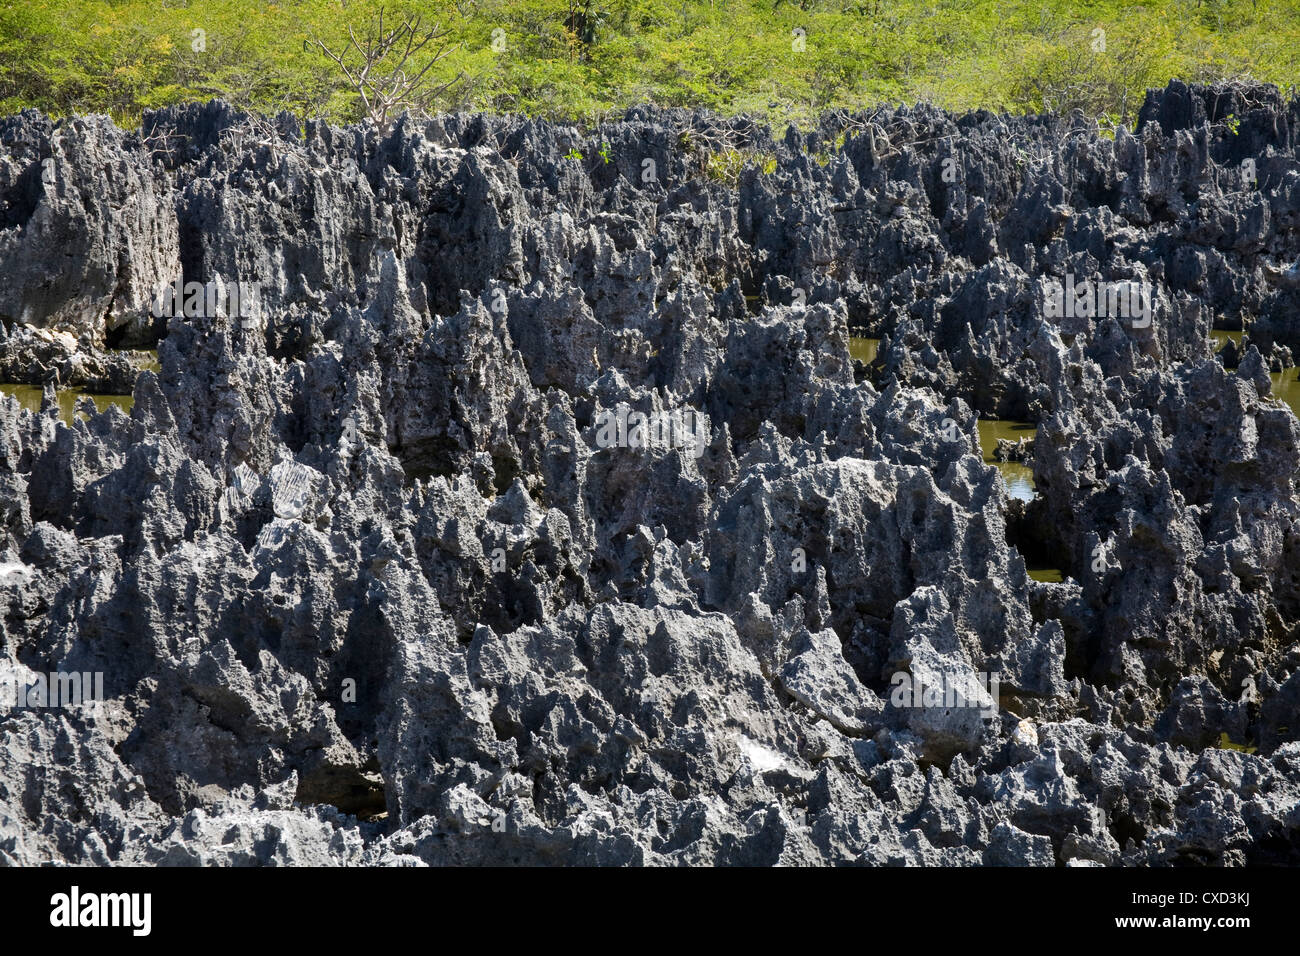 Formaciones rocosas en el infierno, Gran Caimán, Islas Caimán, Antillas Mayores, Antillas, Caribe, América Central Foto de stock